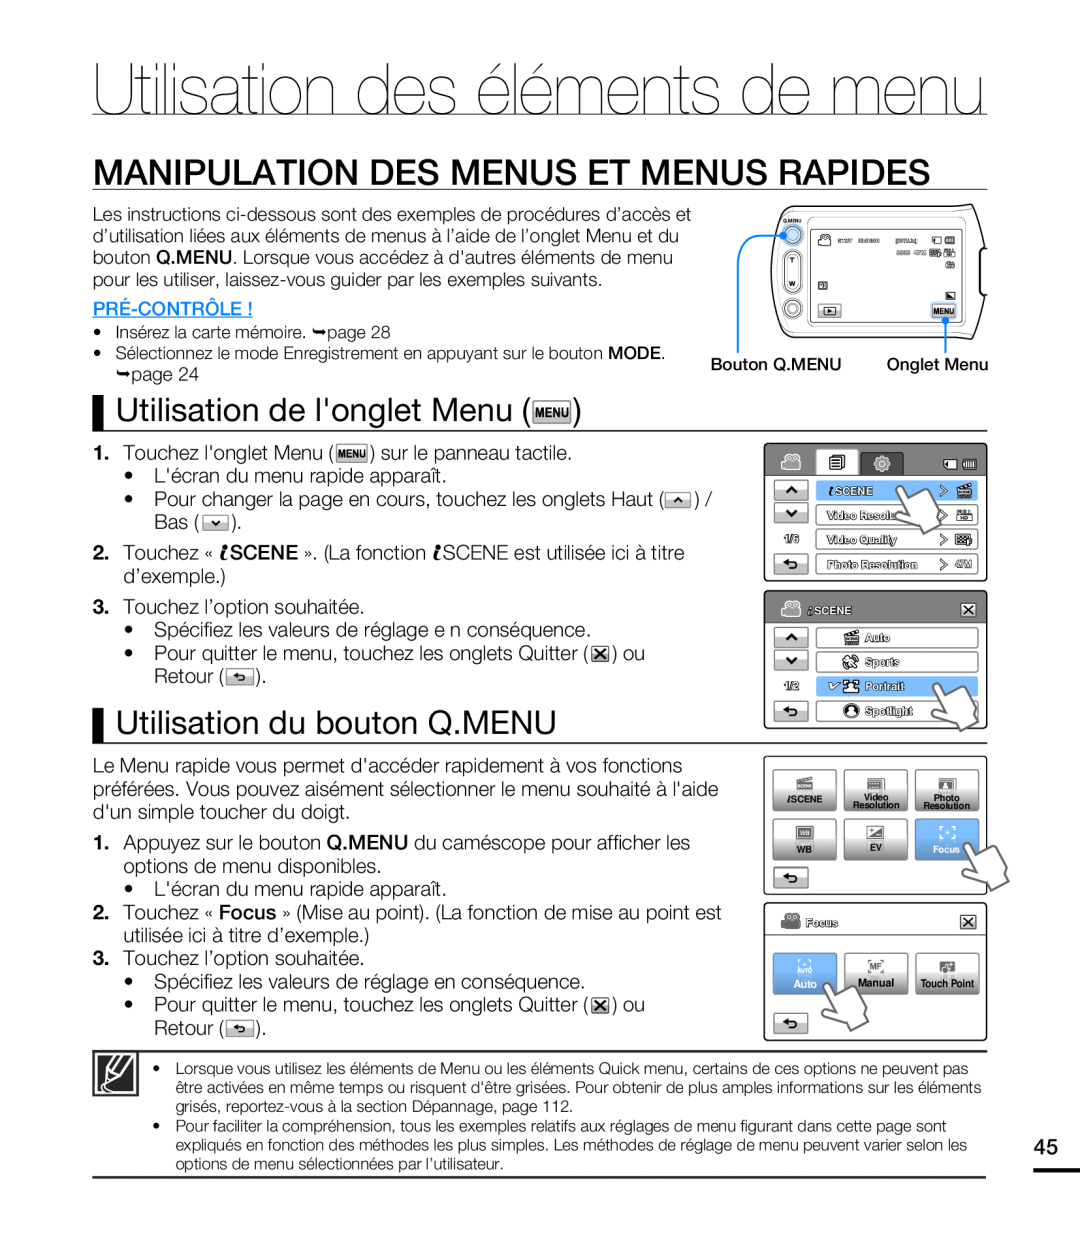 Samsung HMX-T10BP/EDC, HMX-T10WP/EDC manual Utilisation des éléments de menu, Manipulation Des Menus Et Menus Rapides 